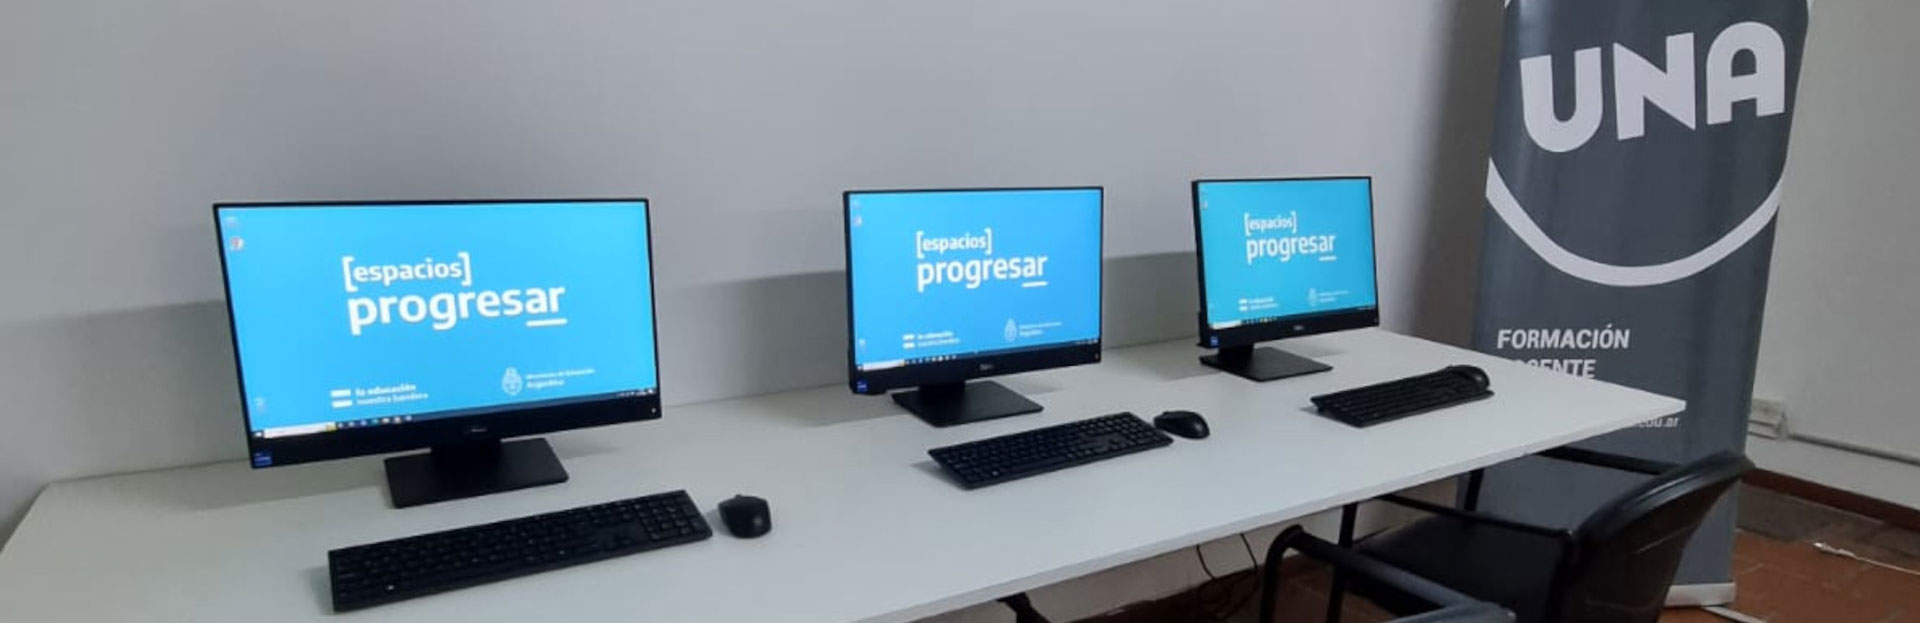 Se inauguró el Espacio Progresar, con computadoras para estudiantes